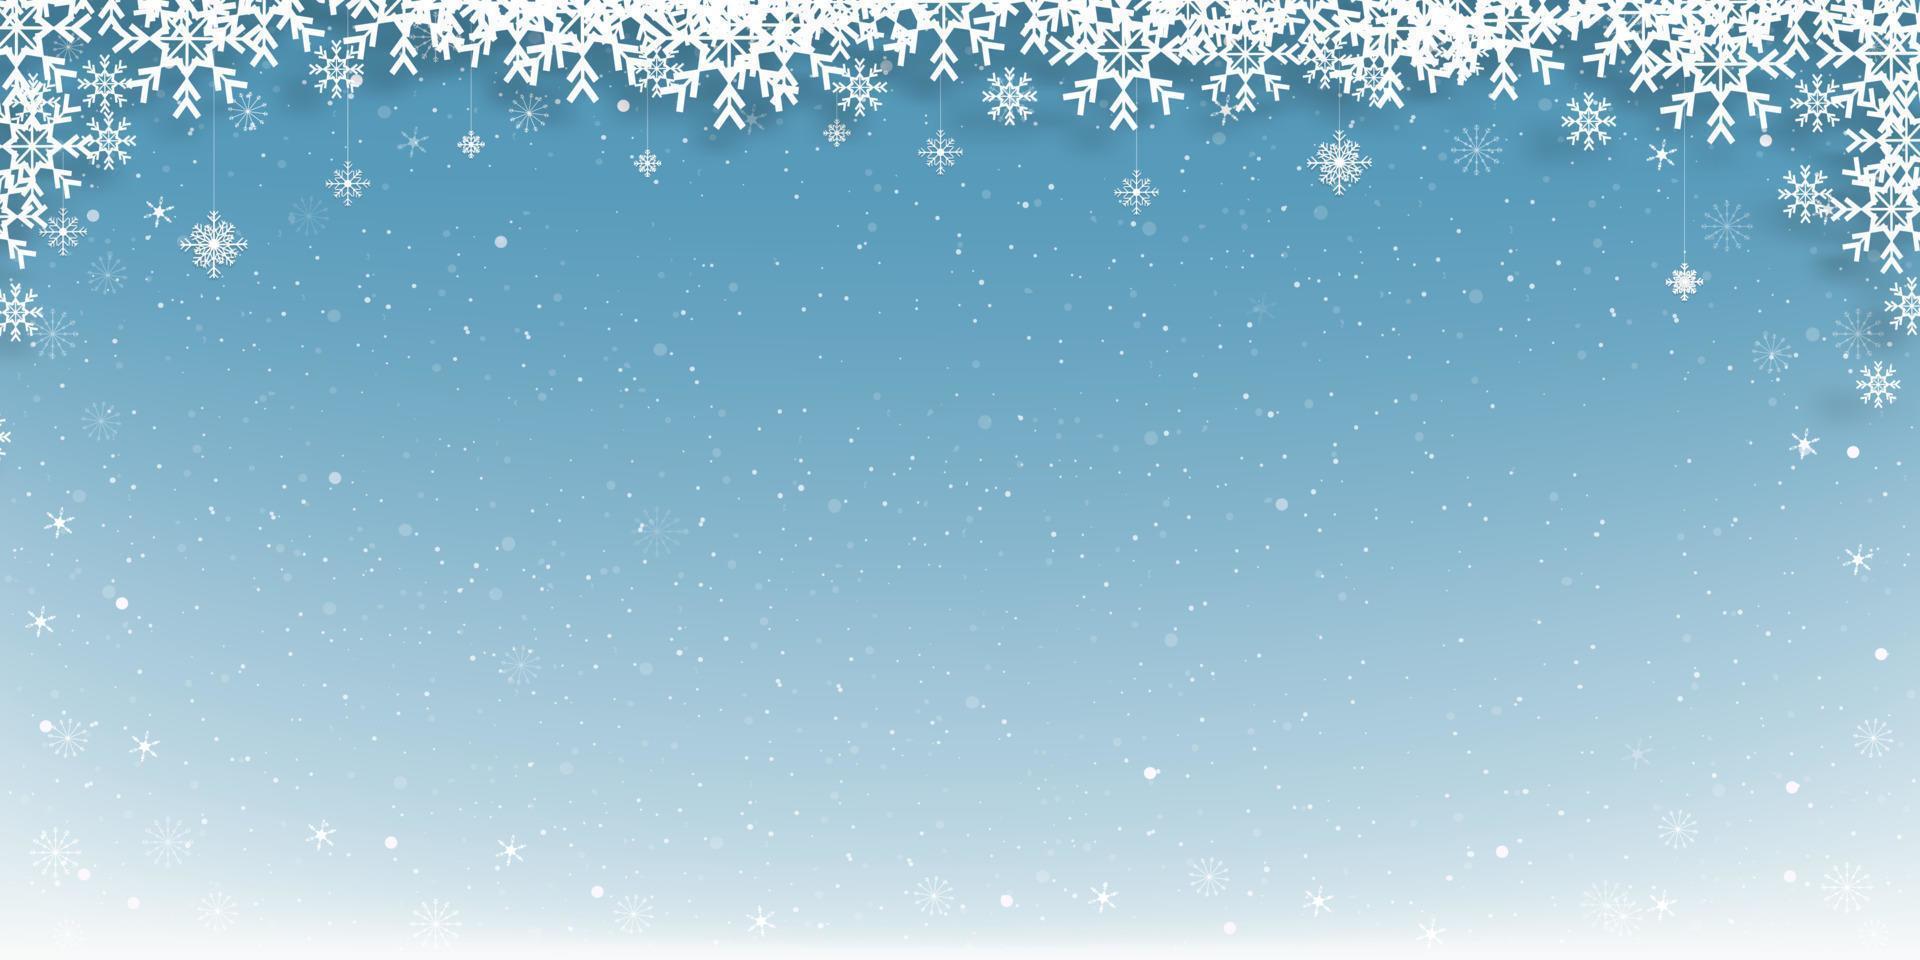 weihnachtshintergrund mit winterlandschaft, schneeflockenrahmen auf hintergrund des blauen himmels, vektorfahne der winterszene für feiertagshintergrund auf neujahrsförderung oder verkaufskonzept vektor